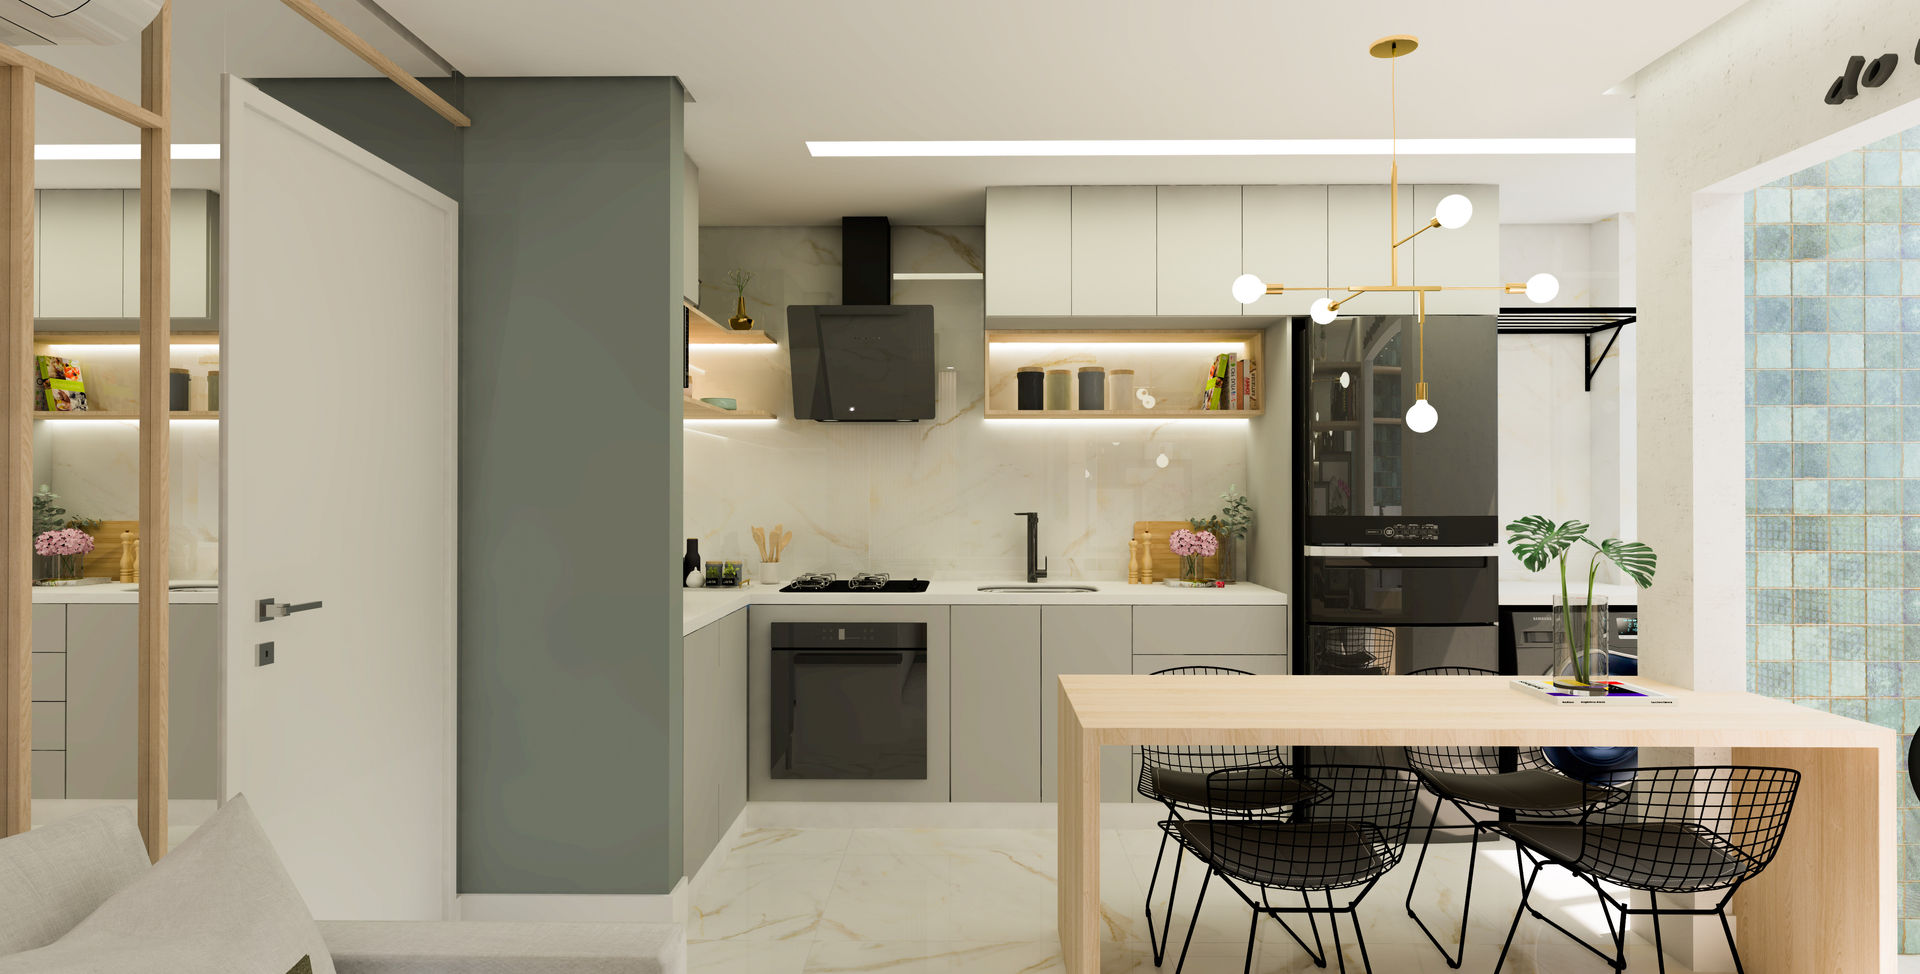 Visite o Decorado - Integração Perfeita entre Sala, Cozinha e Pequena Varanda, ArquitetureSe - Projetos de Arquitetura e Interiores à distância ArquitetureSe - Projetos de Arquitetura e Interiores à distância Small kitchens Quartz